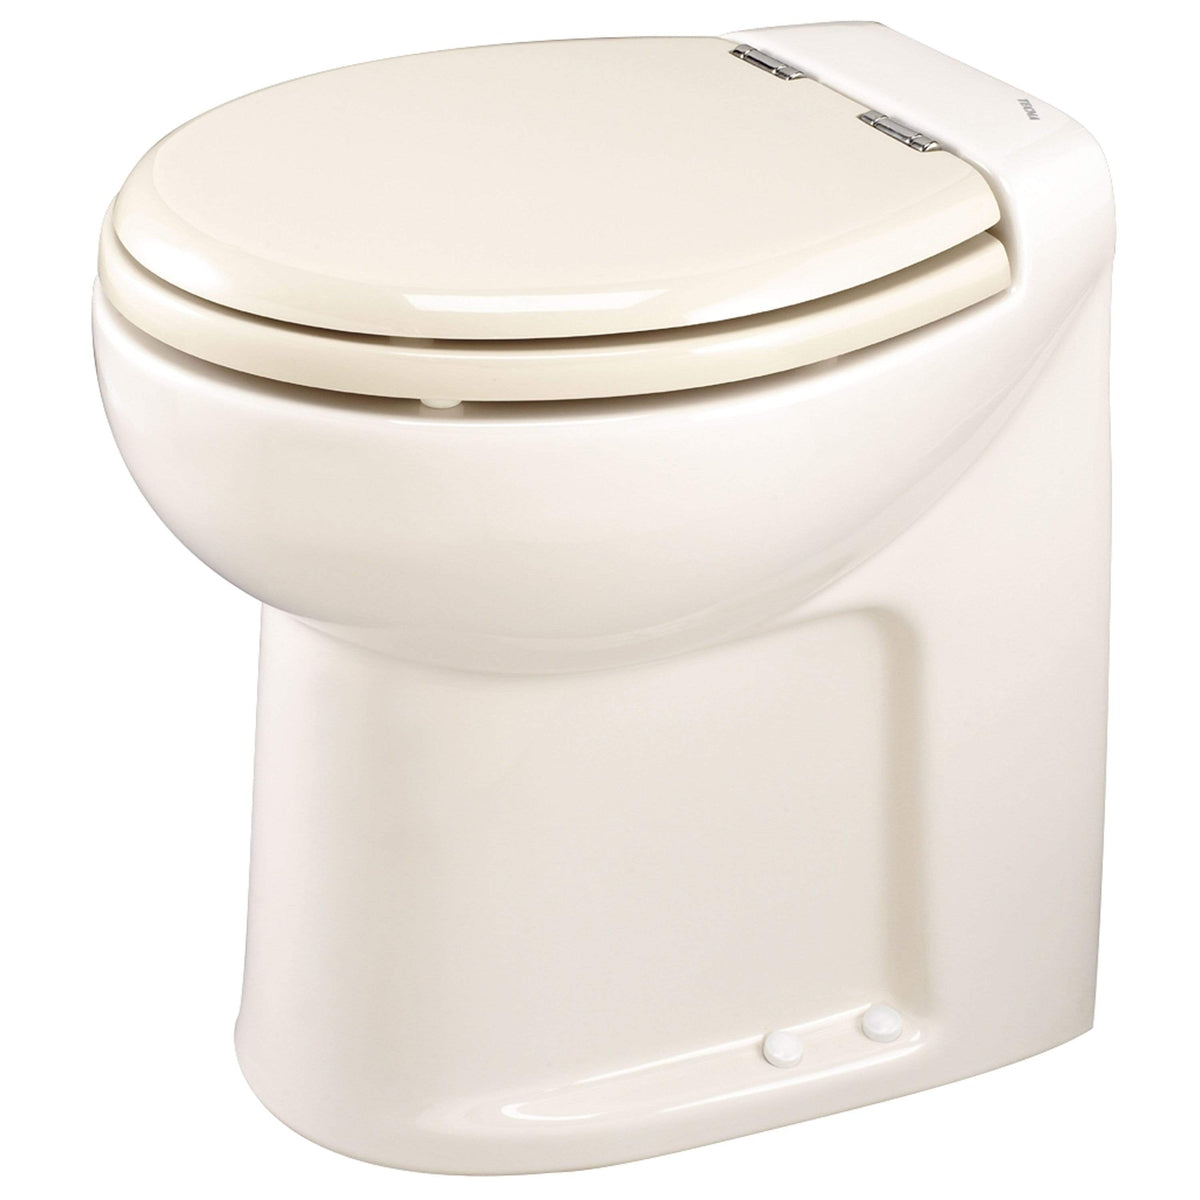 Thetford Not Qualified for Free Shipping Thetford Tecma Silence 1 Mode 24v RV Toilet White #38030